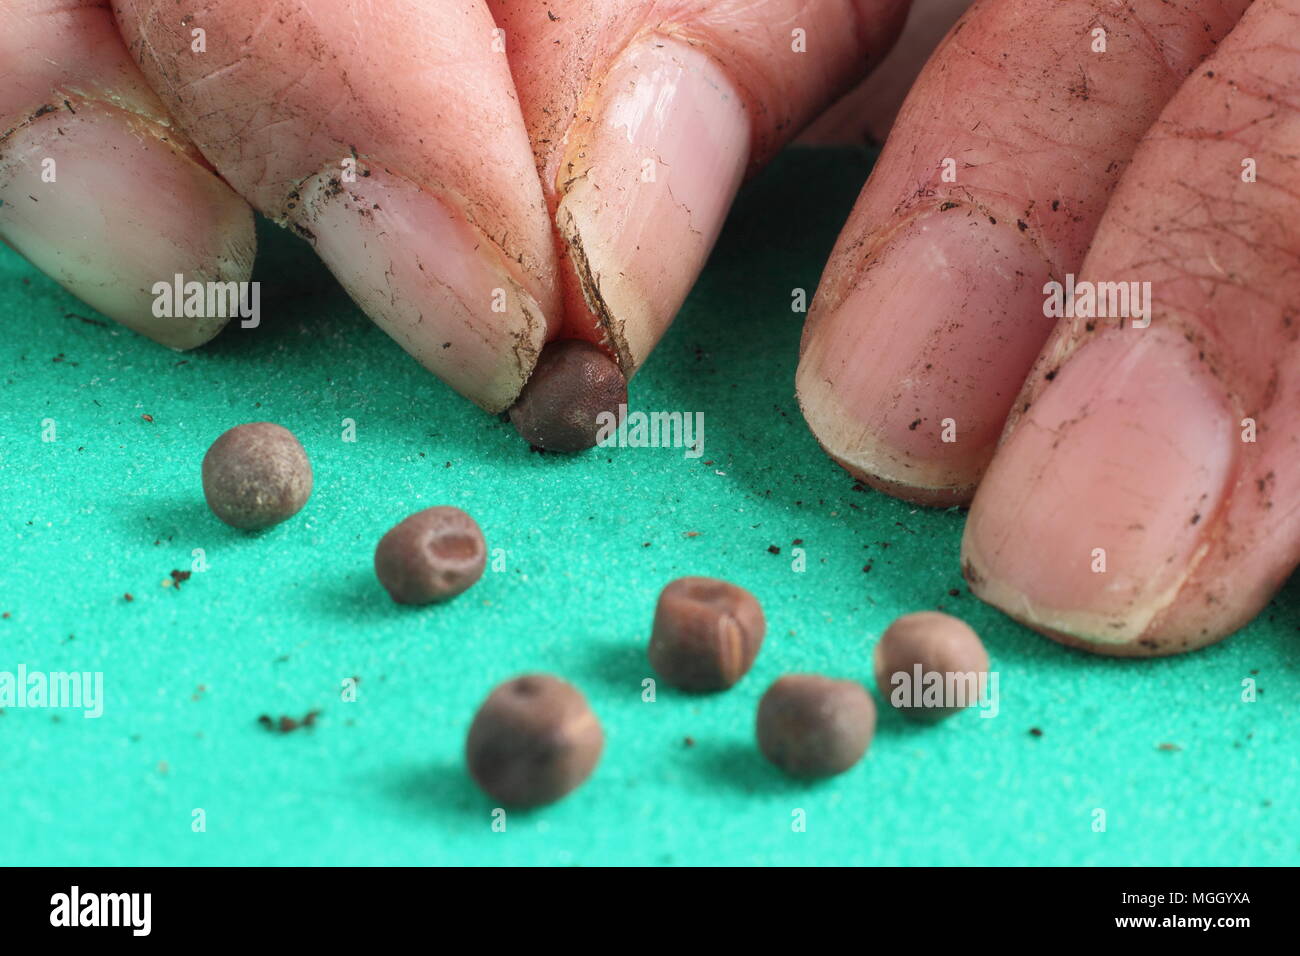 Lathyrus scarificatrice. Pisello dolce semi sono graffiati o 'scarified' - sulla carta vetrata a grana fine per incoraggiare la germinazione veloce quando piantati, REGNO UNITO Foto Stock